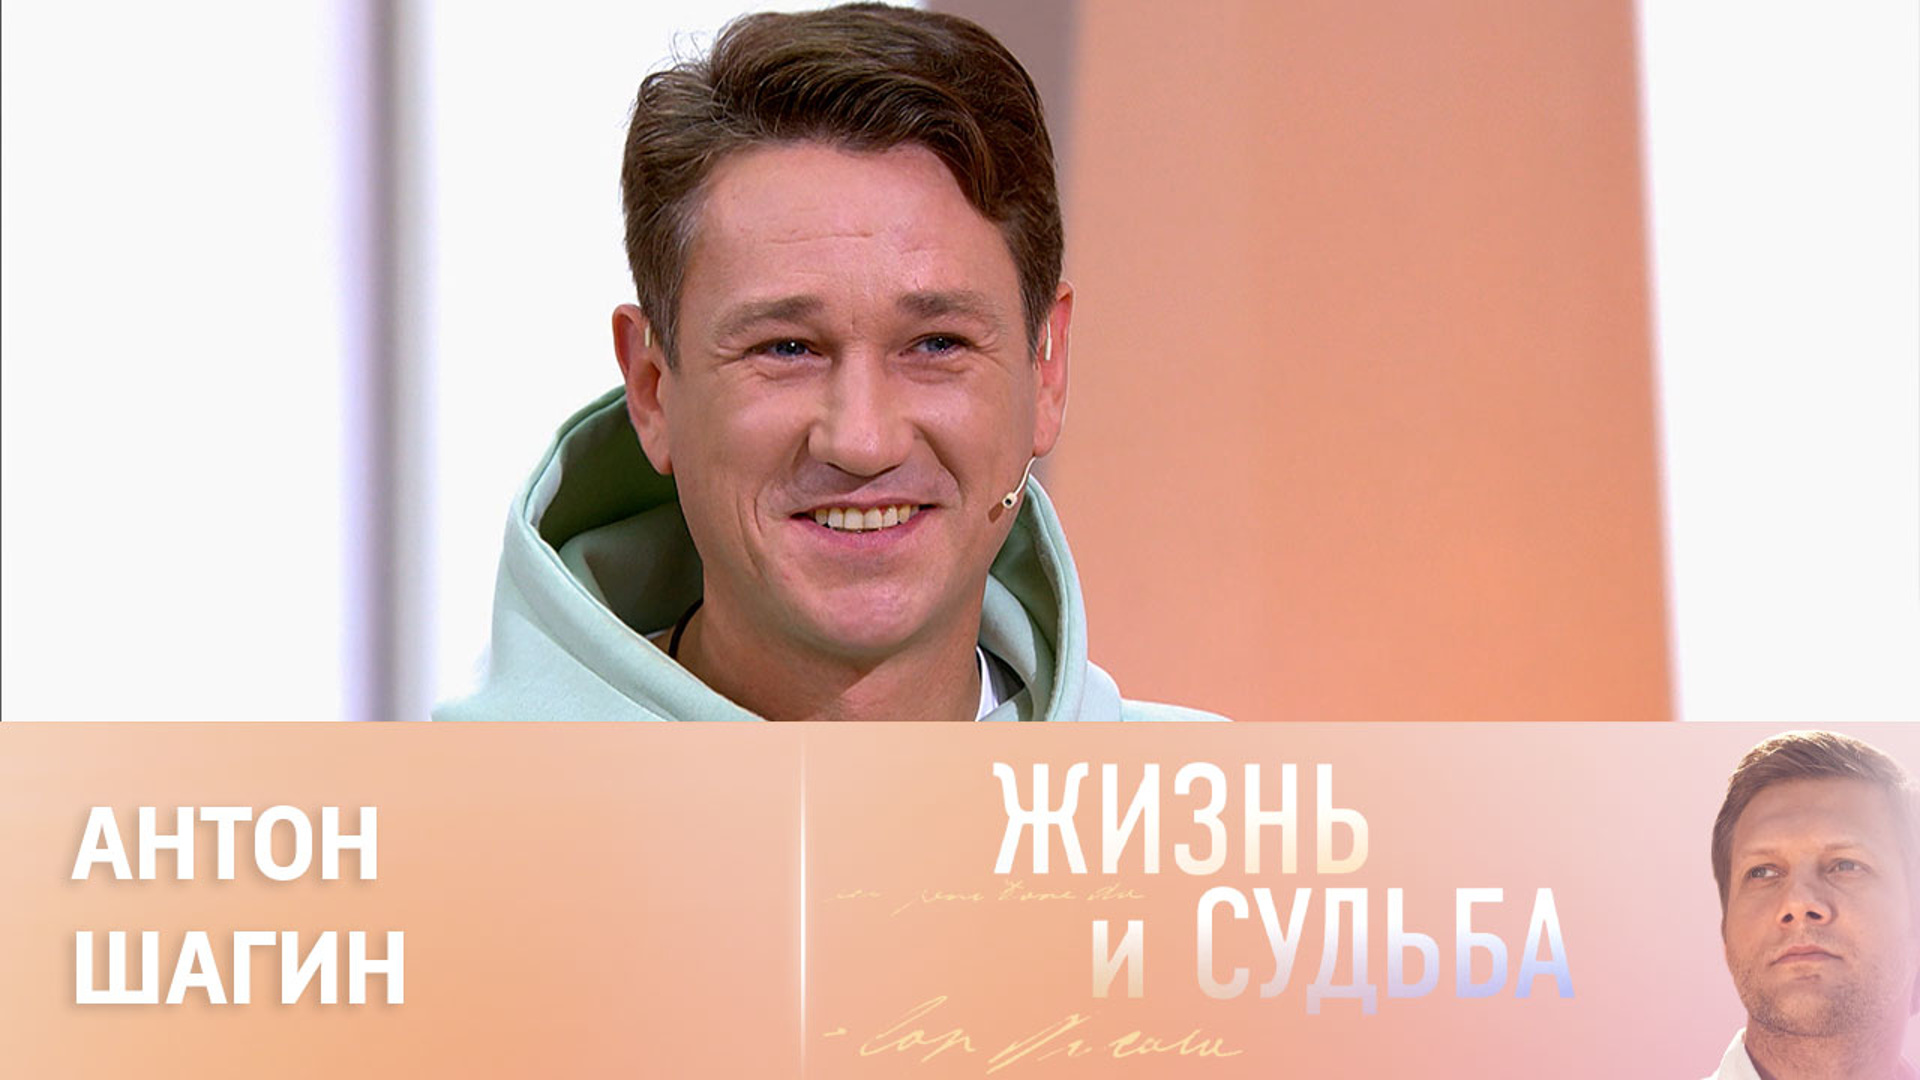 Актеры канала Россия 1